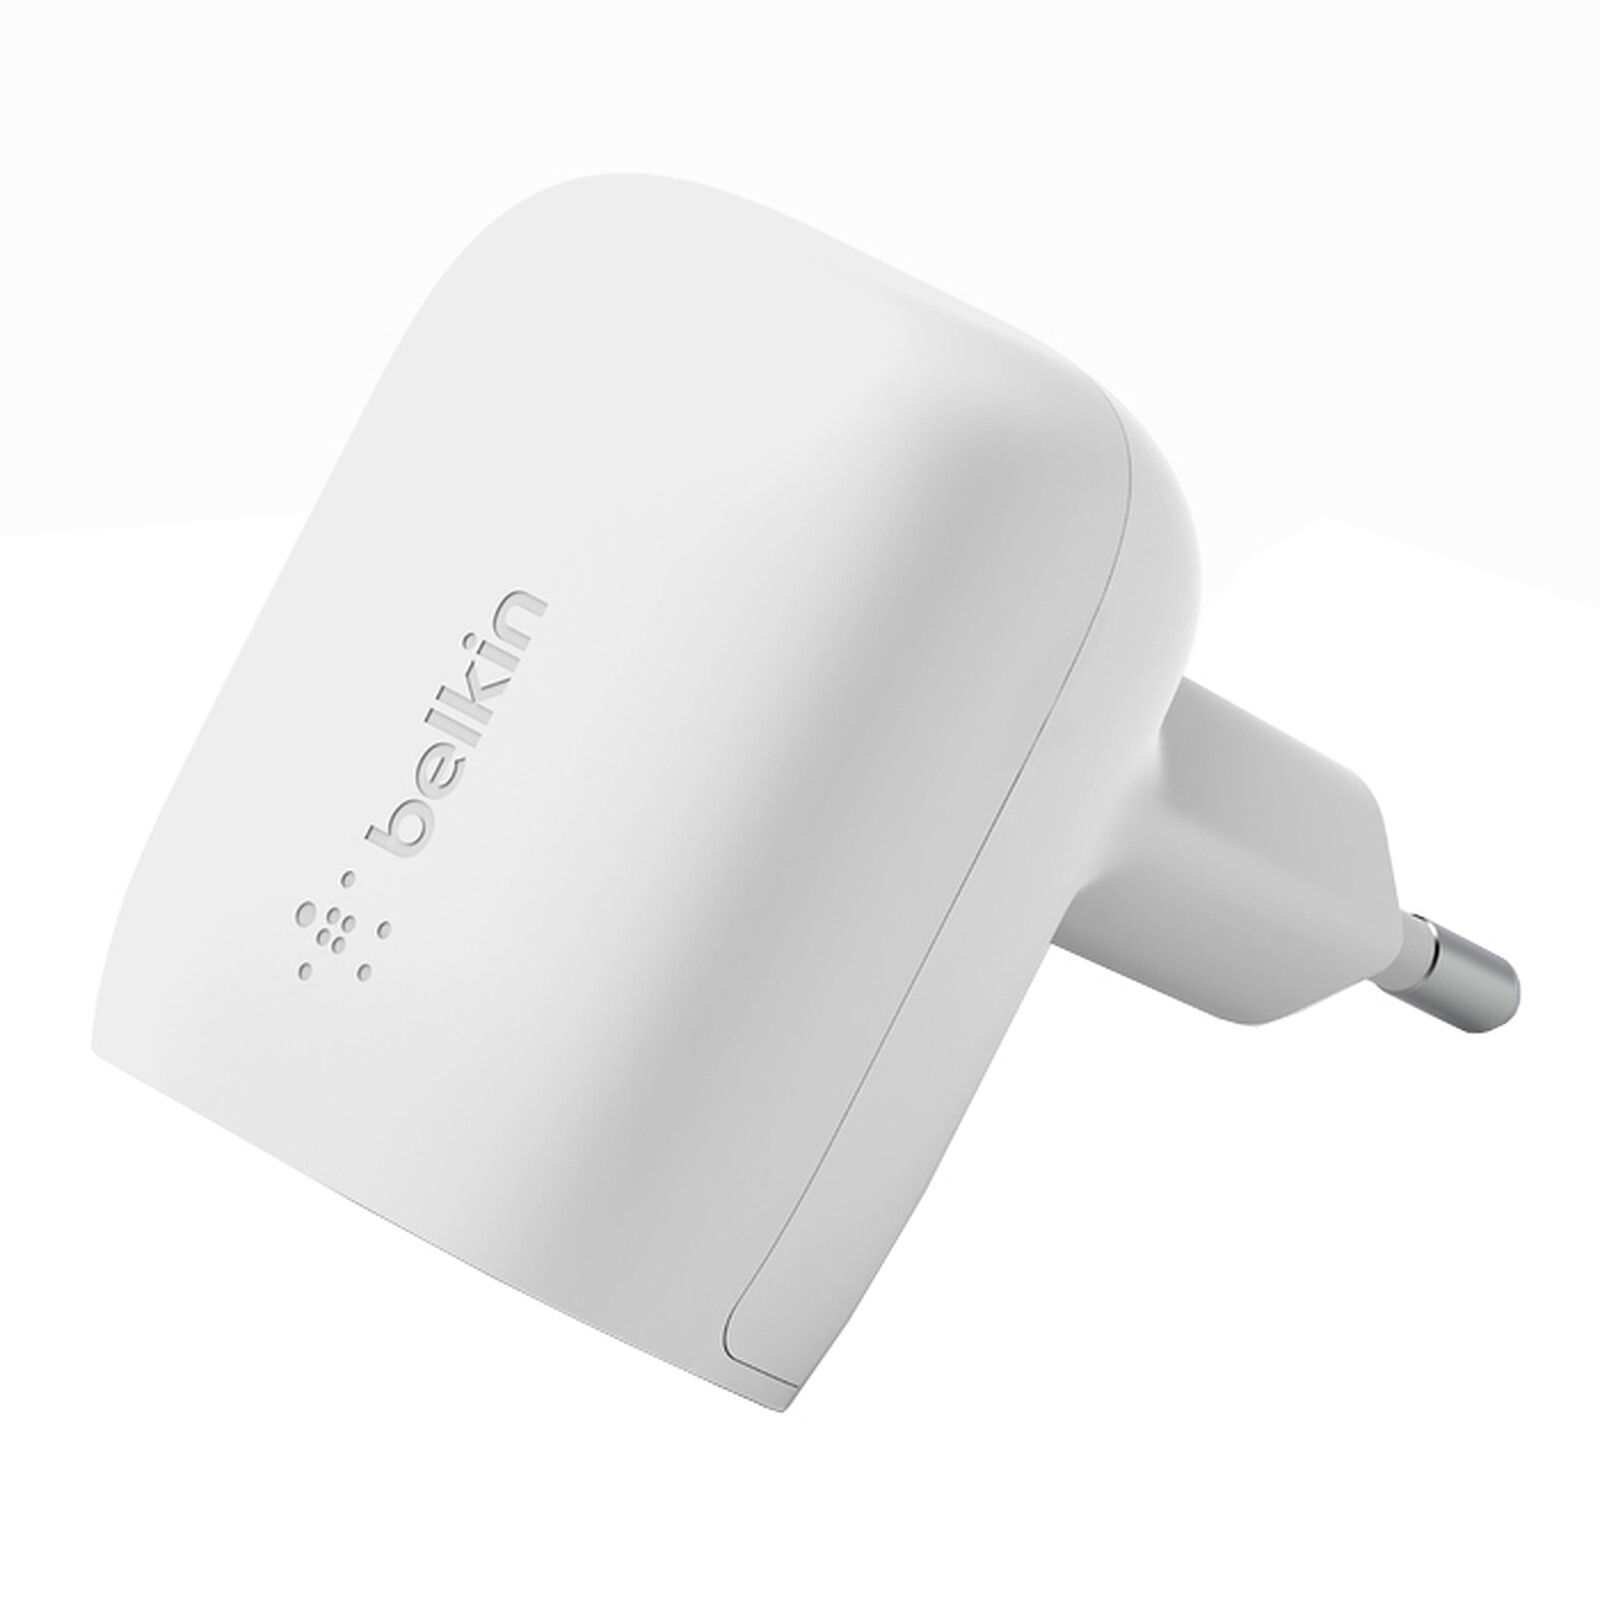 Cargador USB-C Belkin de 20 W máx. para iPad, iPhone y otros smartphones -  Cargador de teléfono - LDLC